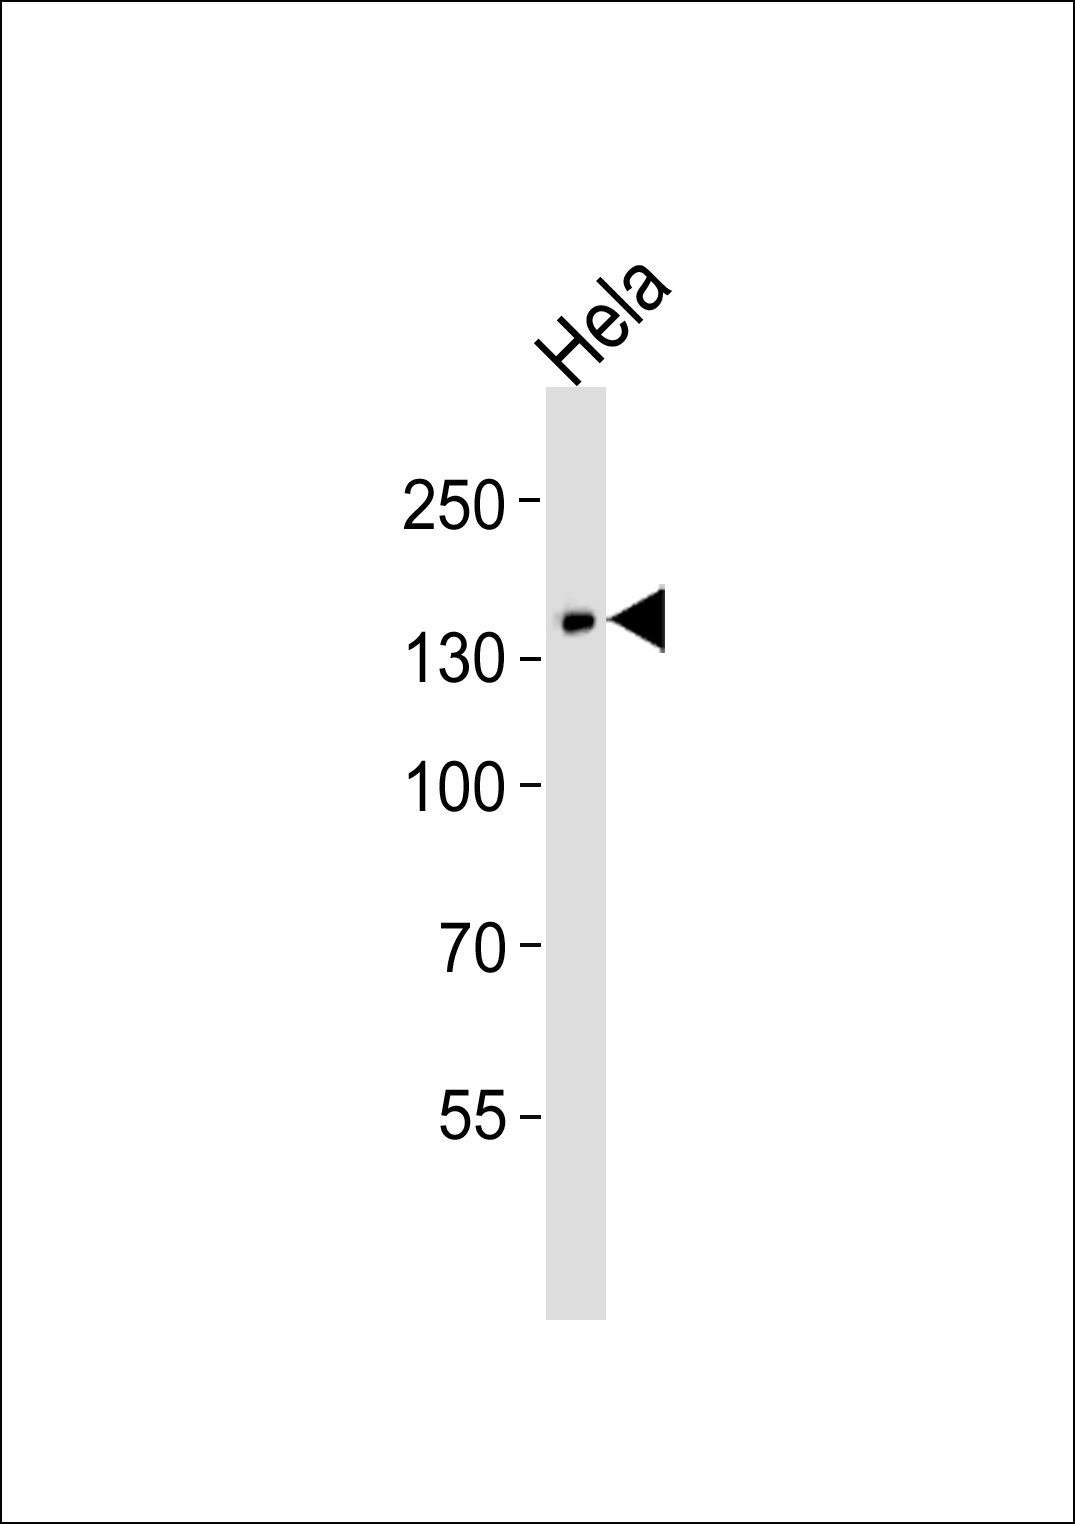 PLCG1 Antibody (OAAB18291) in Hela cell line using Western Blot